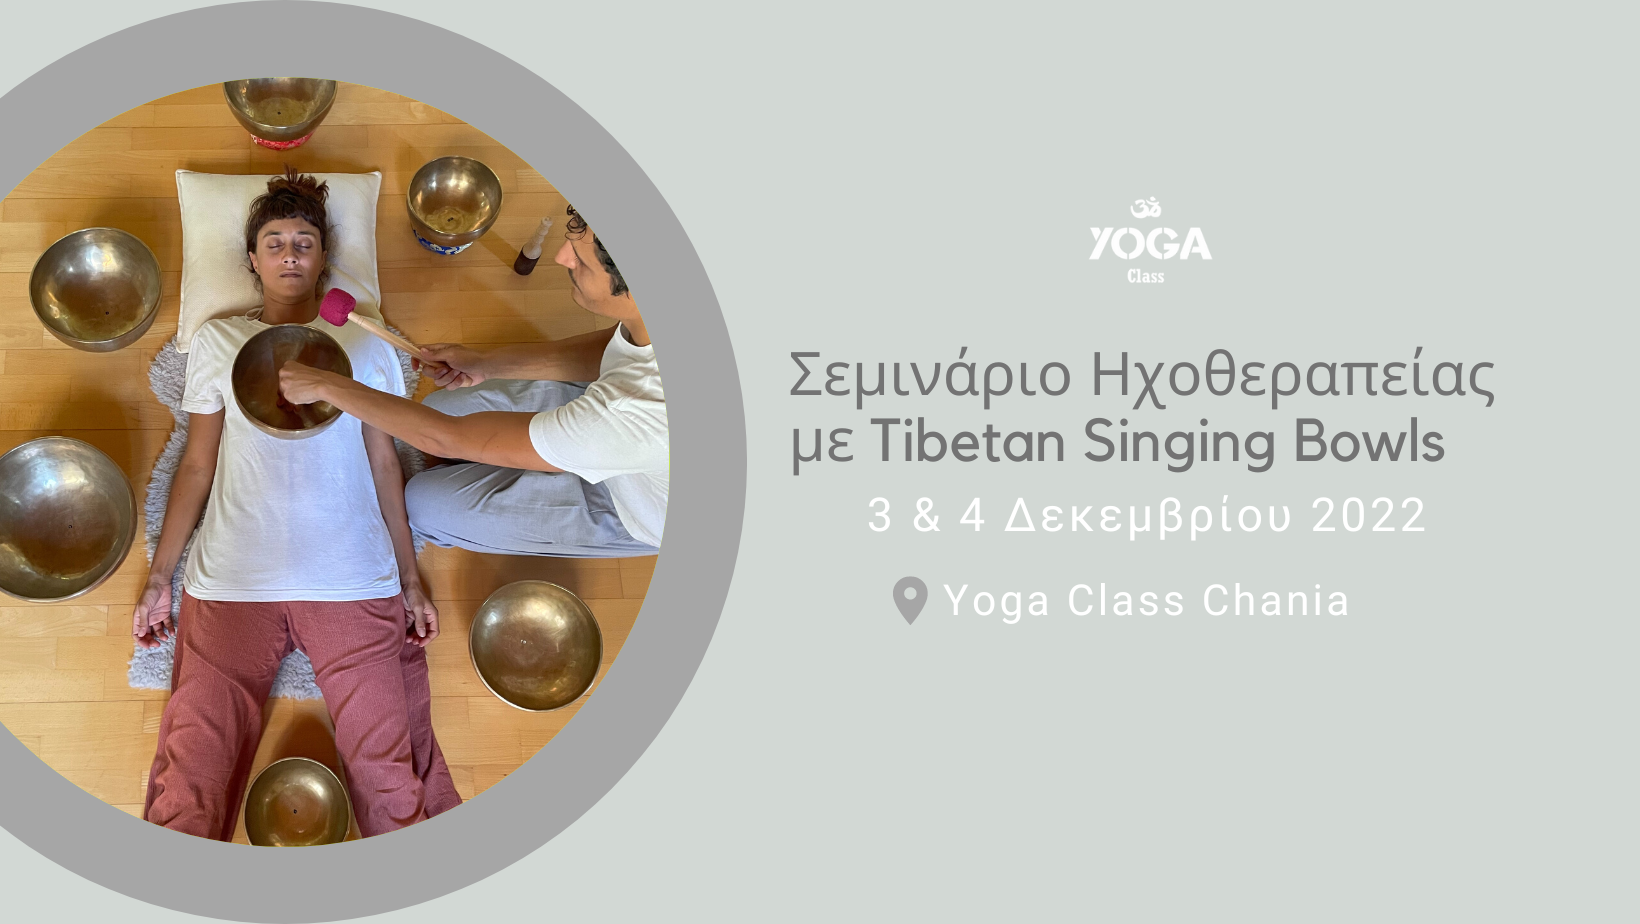 Εκπαιδευτικό Σεμινάριο Ηχοθεραπείας με Tibetan Singing Bowls - 3 & 4 Δεκεμβρίου - Χανιά